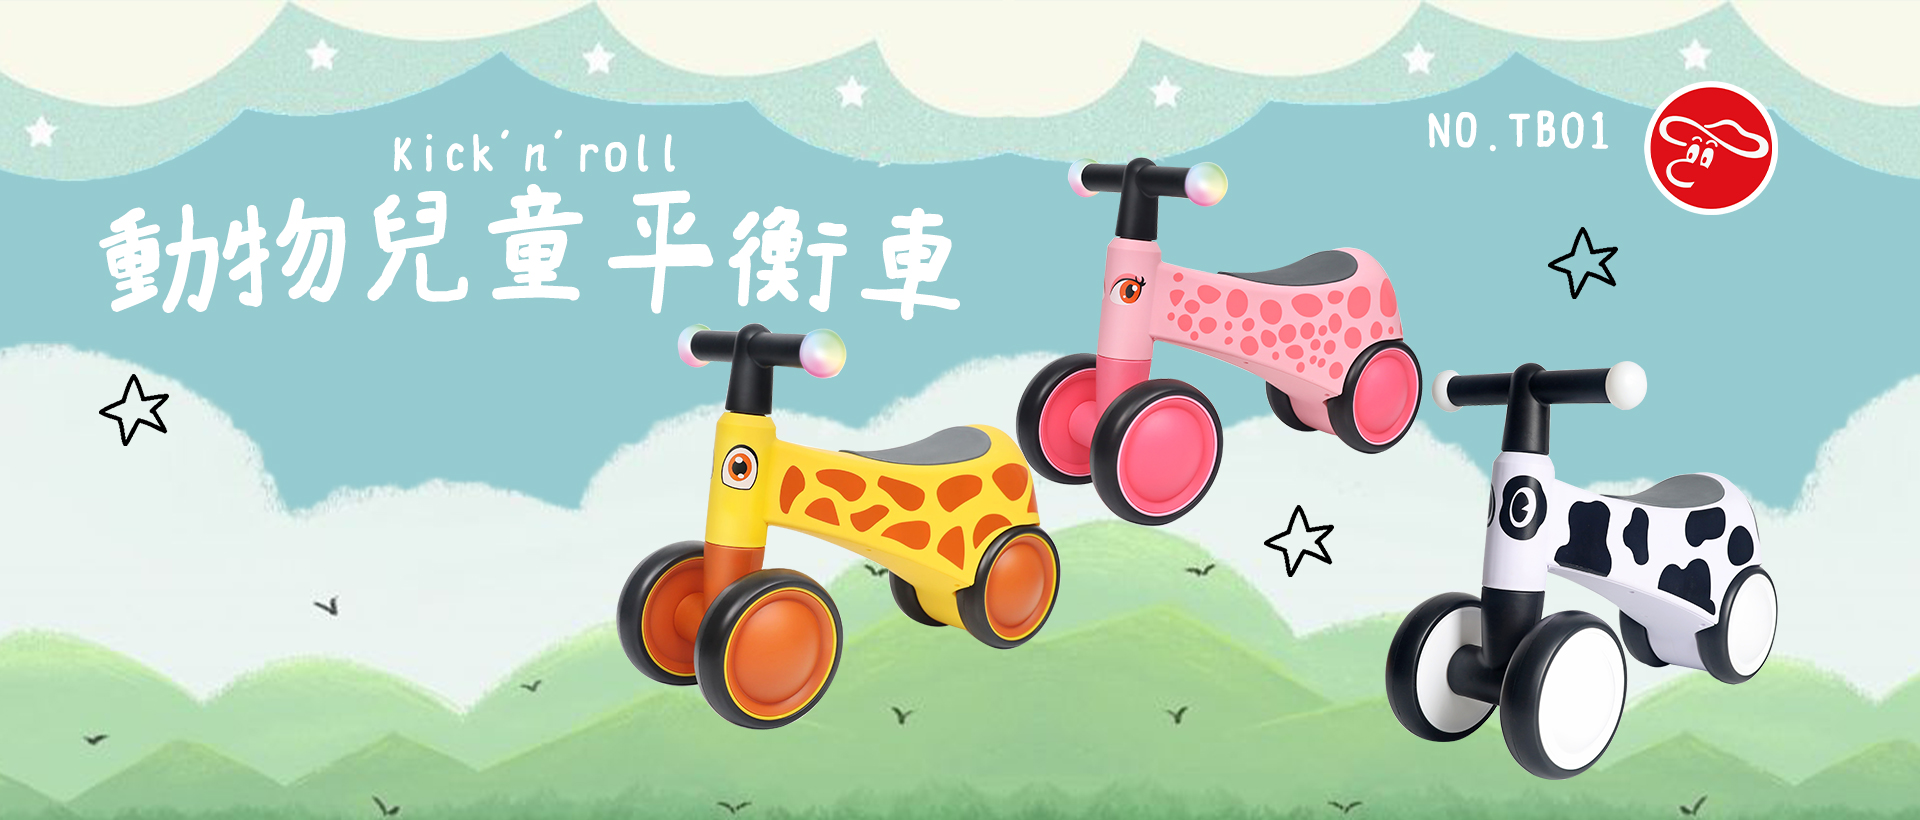 Kick'n'roll 動物兒童平衡車